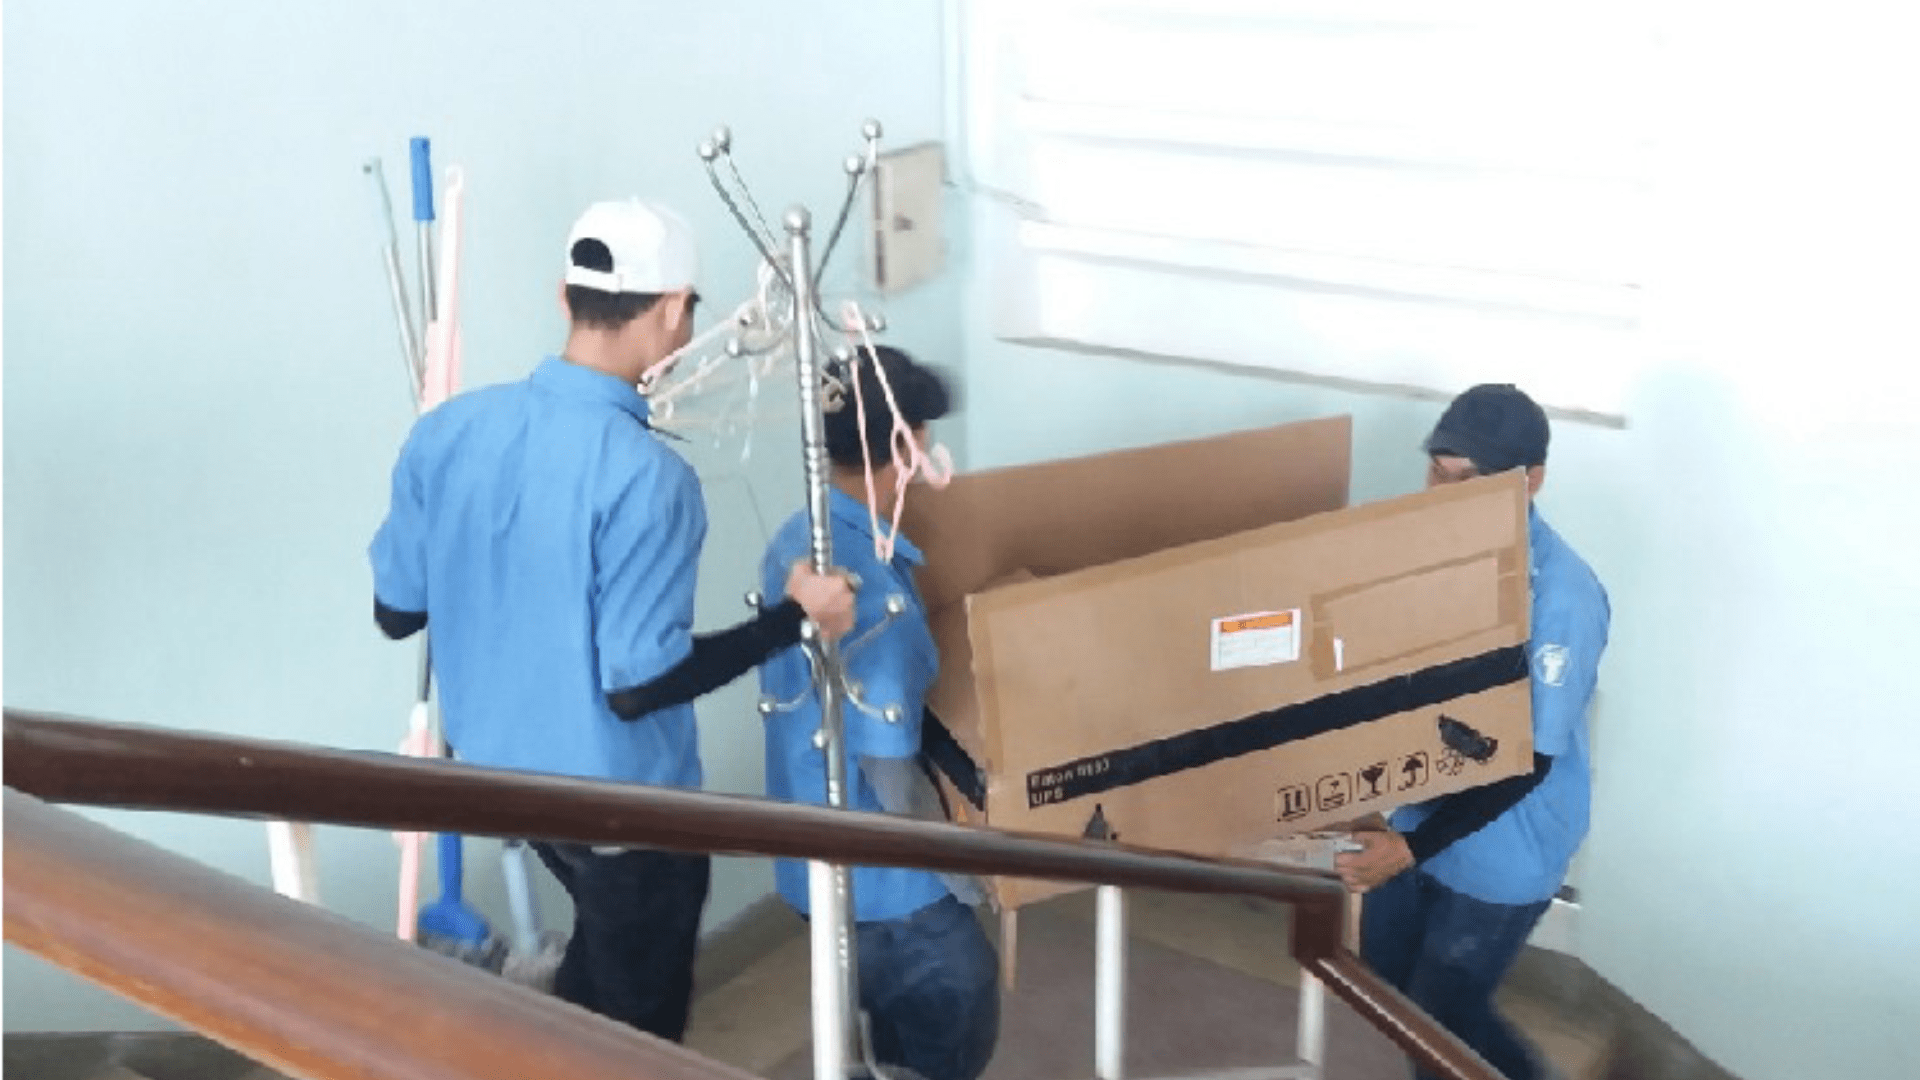 Chuyển nhà Viet Moving - Dịch vụ chuyển nhà Đà Nẵng trọn gói với giá hạt dẻ